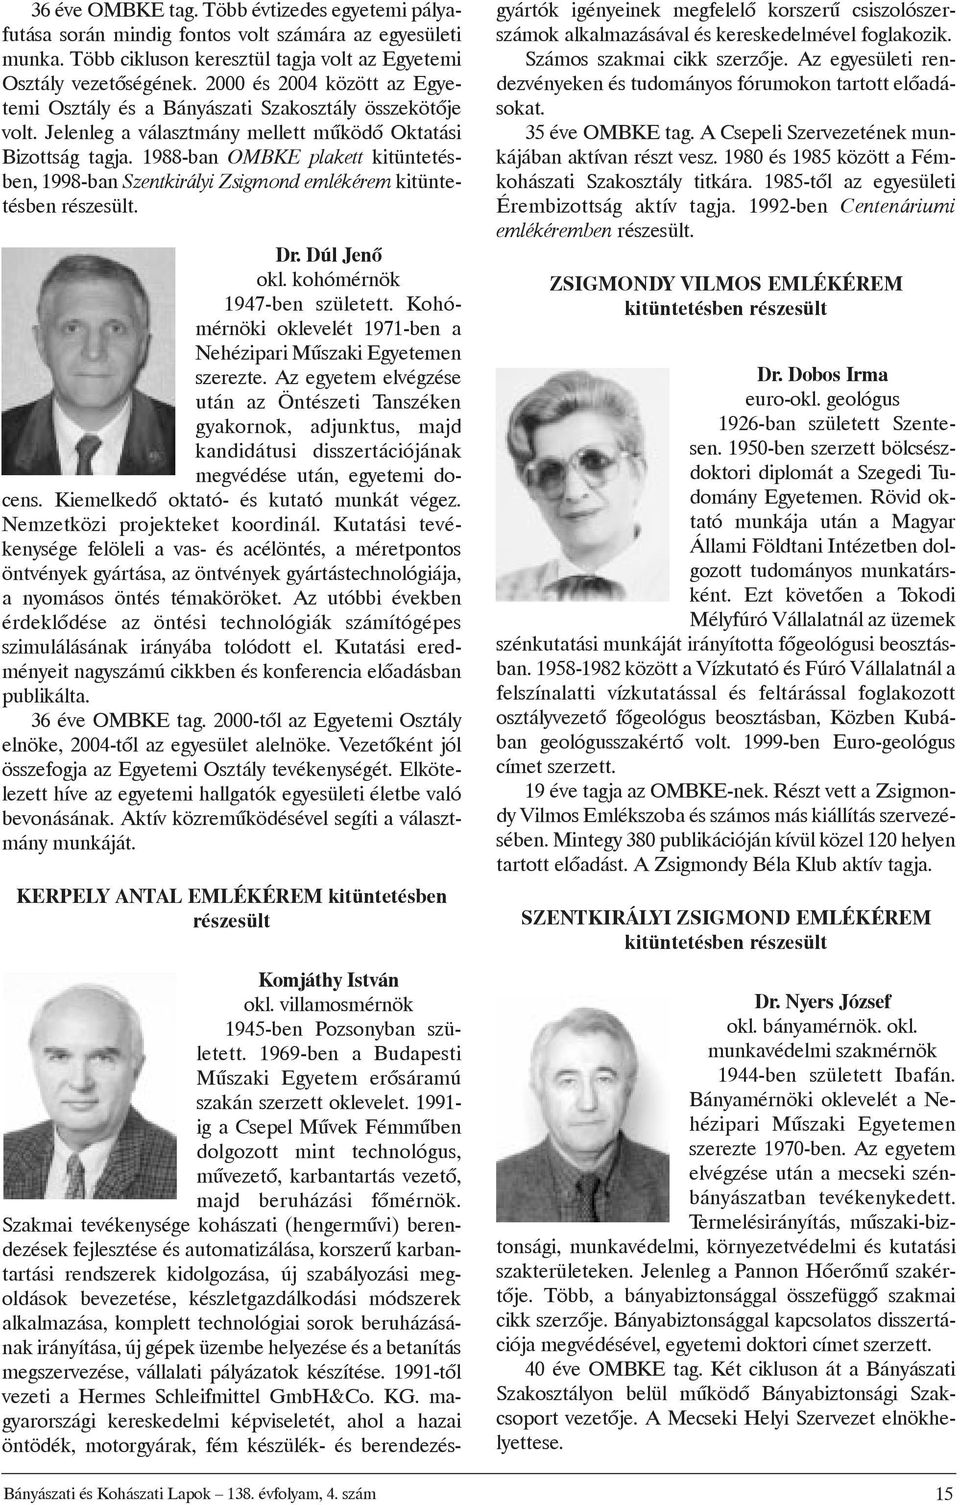 1988-ban OMBKE plakett kitüntetésben, 1998-ban Szentkirályi Zsigmond emlékérem kitüntetésben részesült. Dr. Dúl Jenõ okl. kohómérnök 1947-ben született.